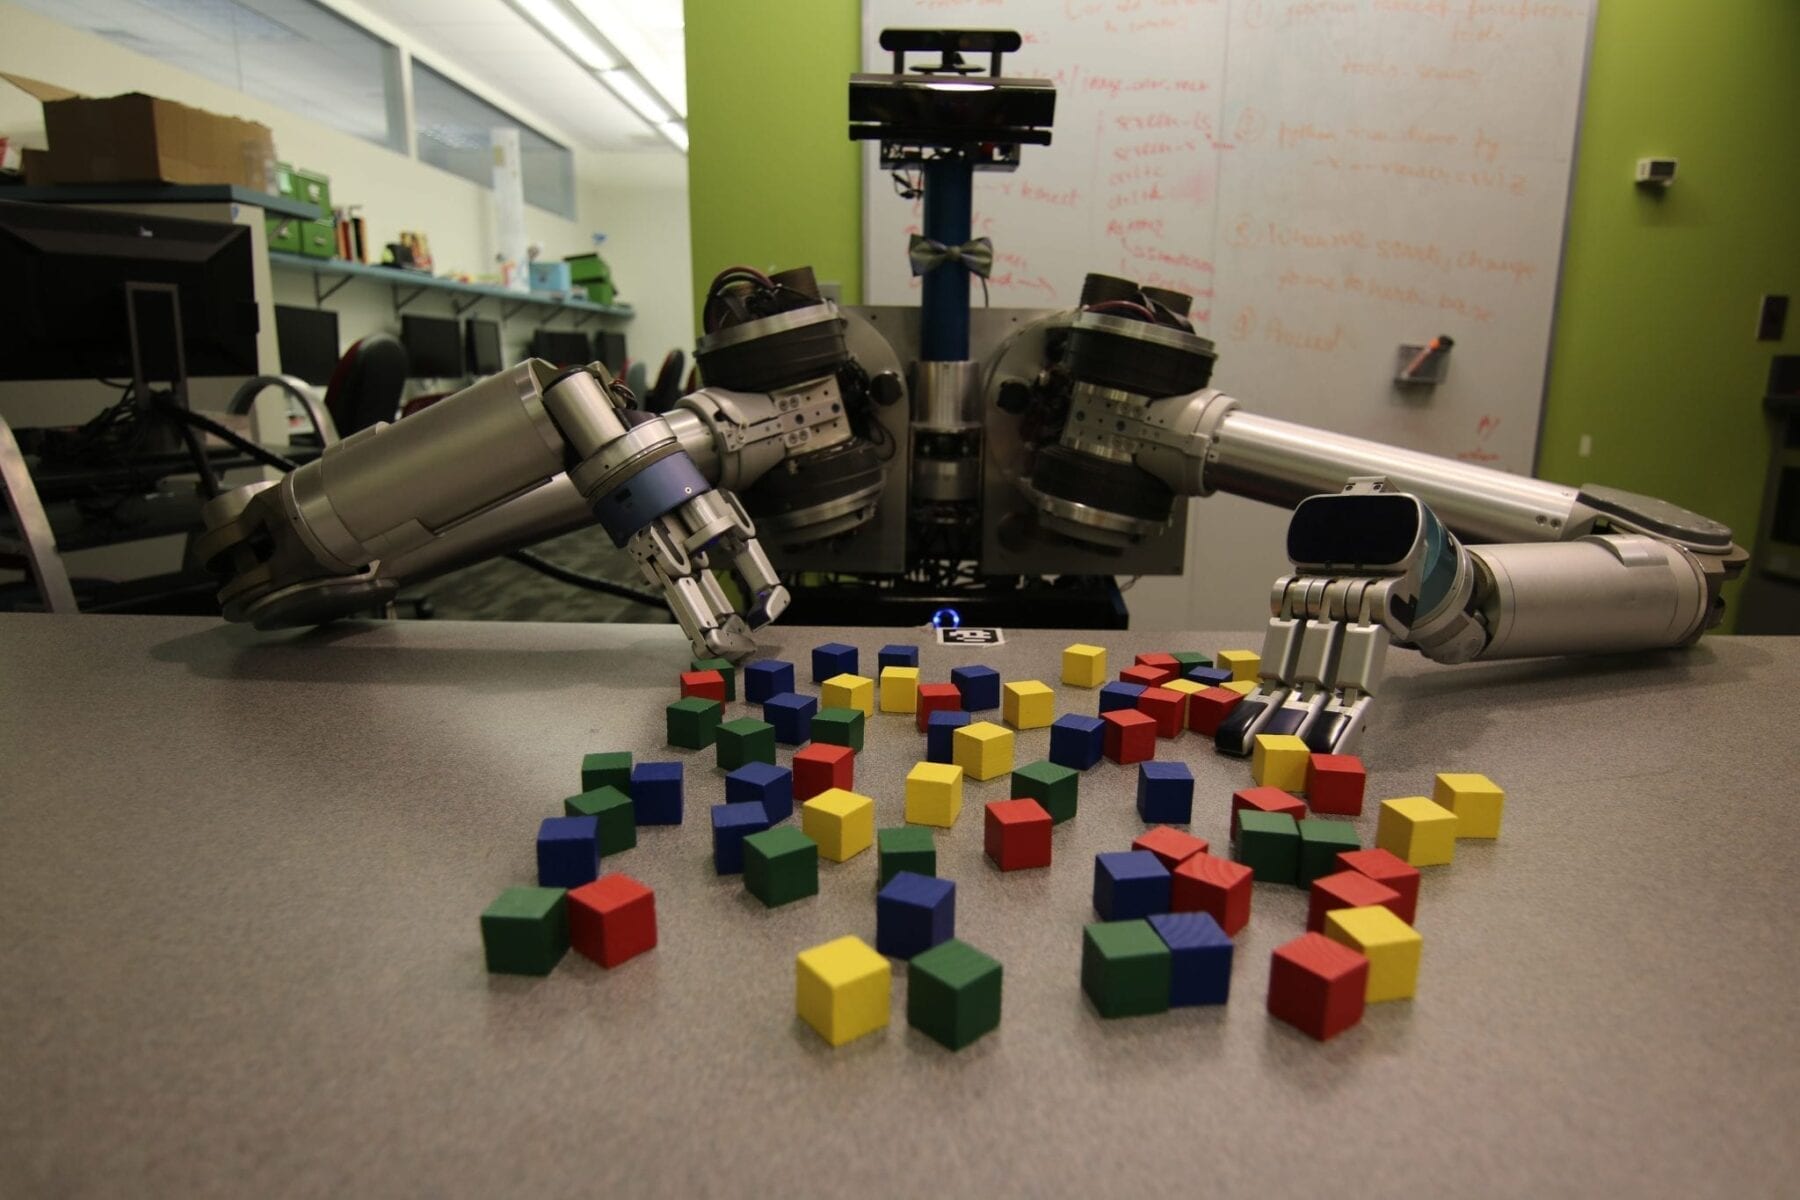 Robots Get Creative To Cut Through Clutter